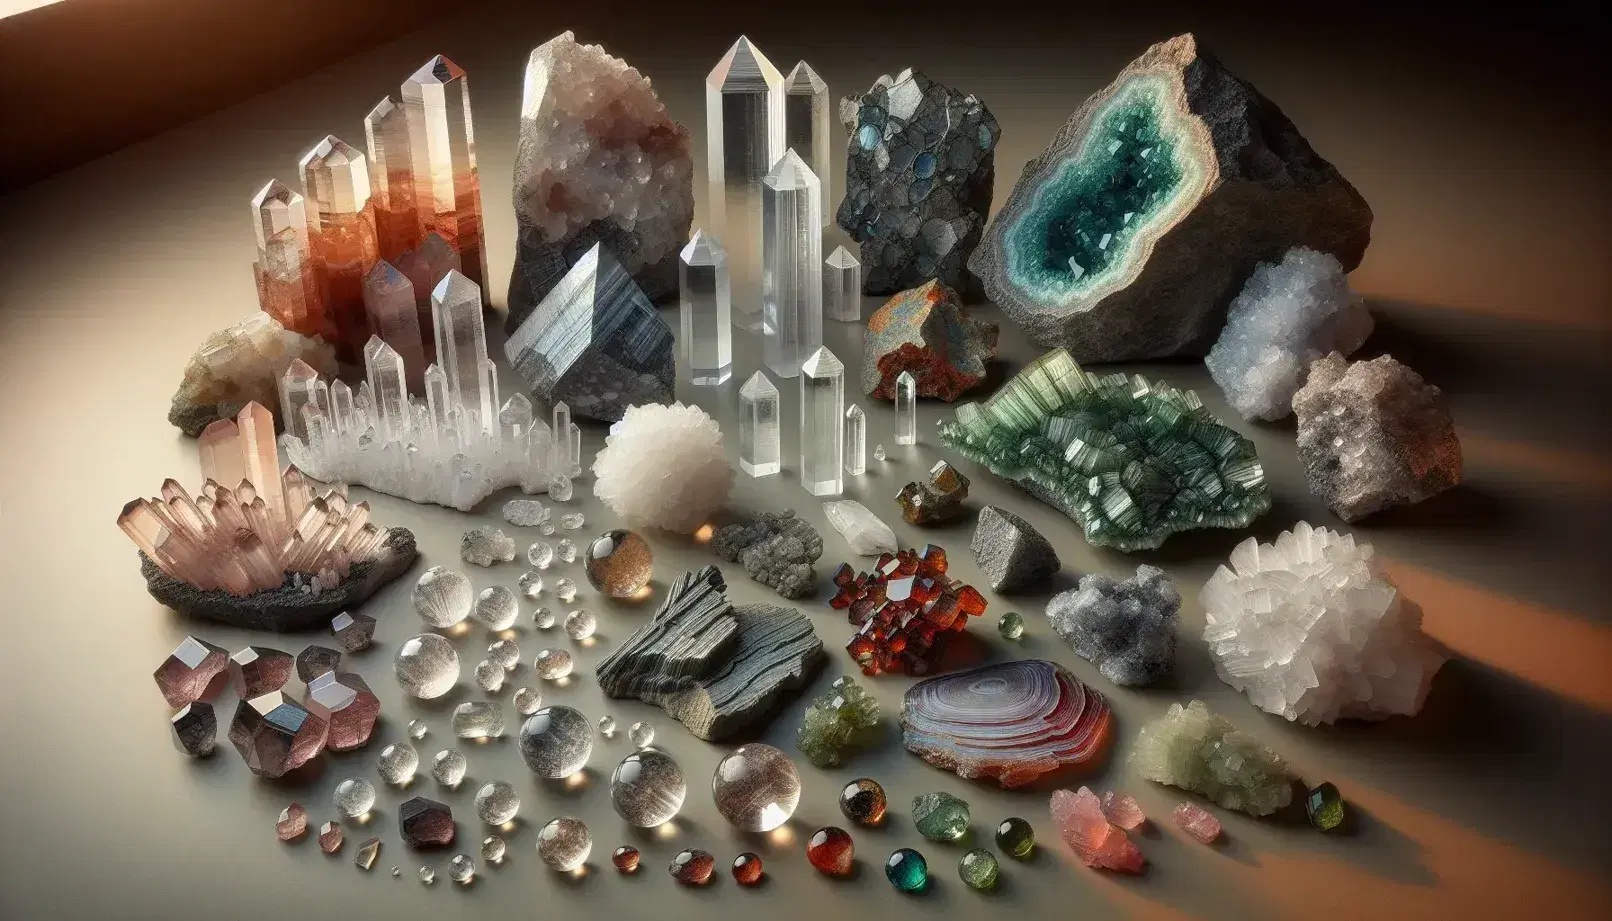 Colección de minerales naturales con cristales de cuarzo transparentes, capas de mica sedosa, olivina verde, granate rojo intenso y rocas ígneas con silicatos en superficie neutra.